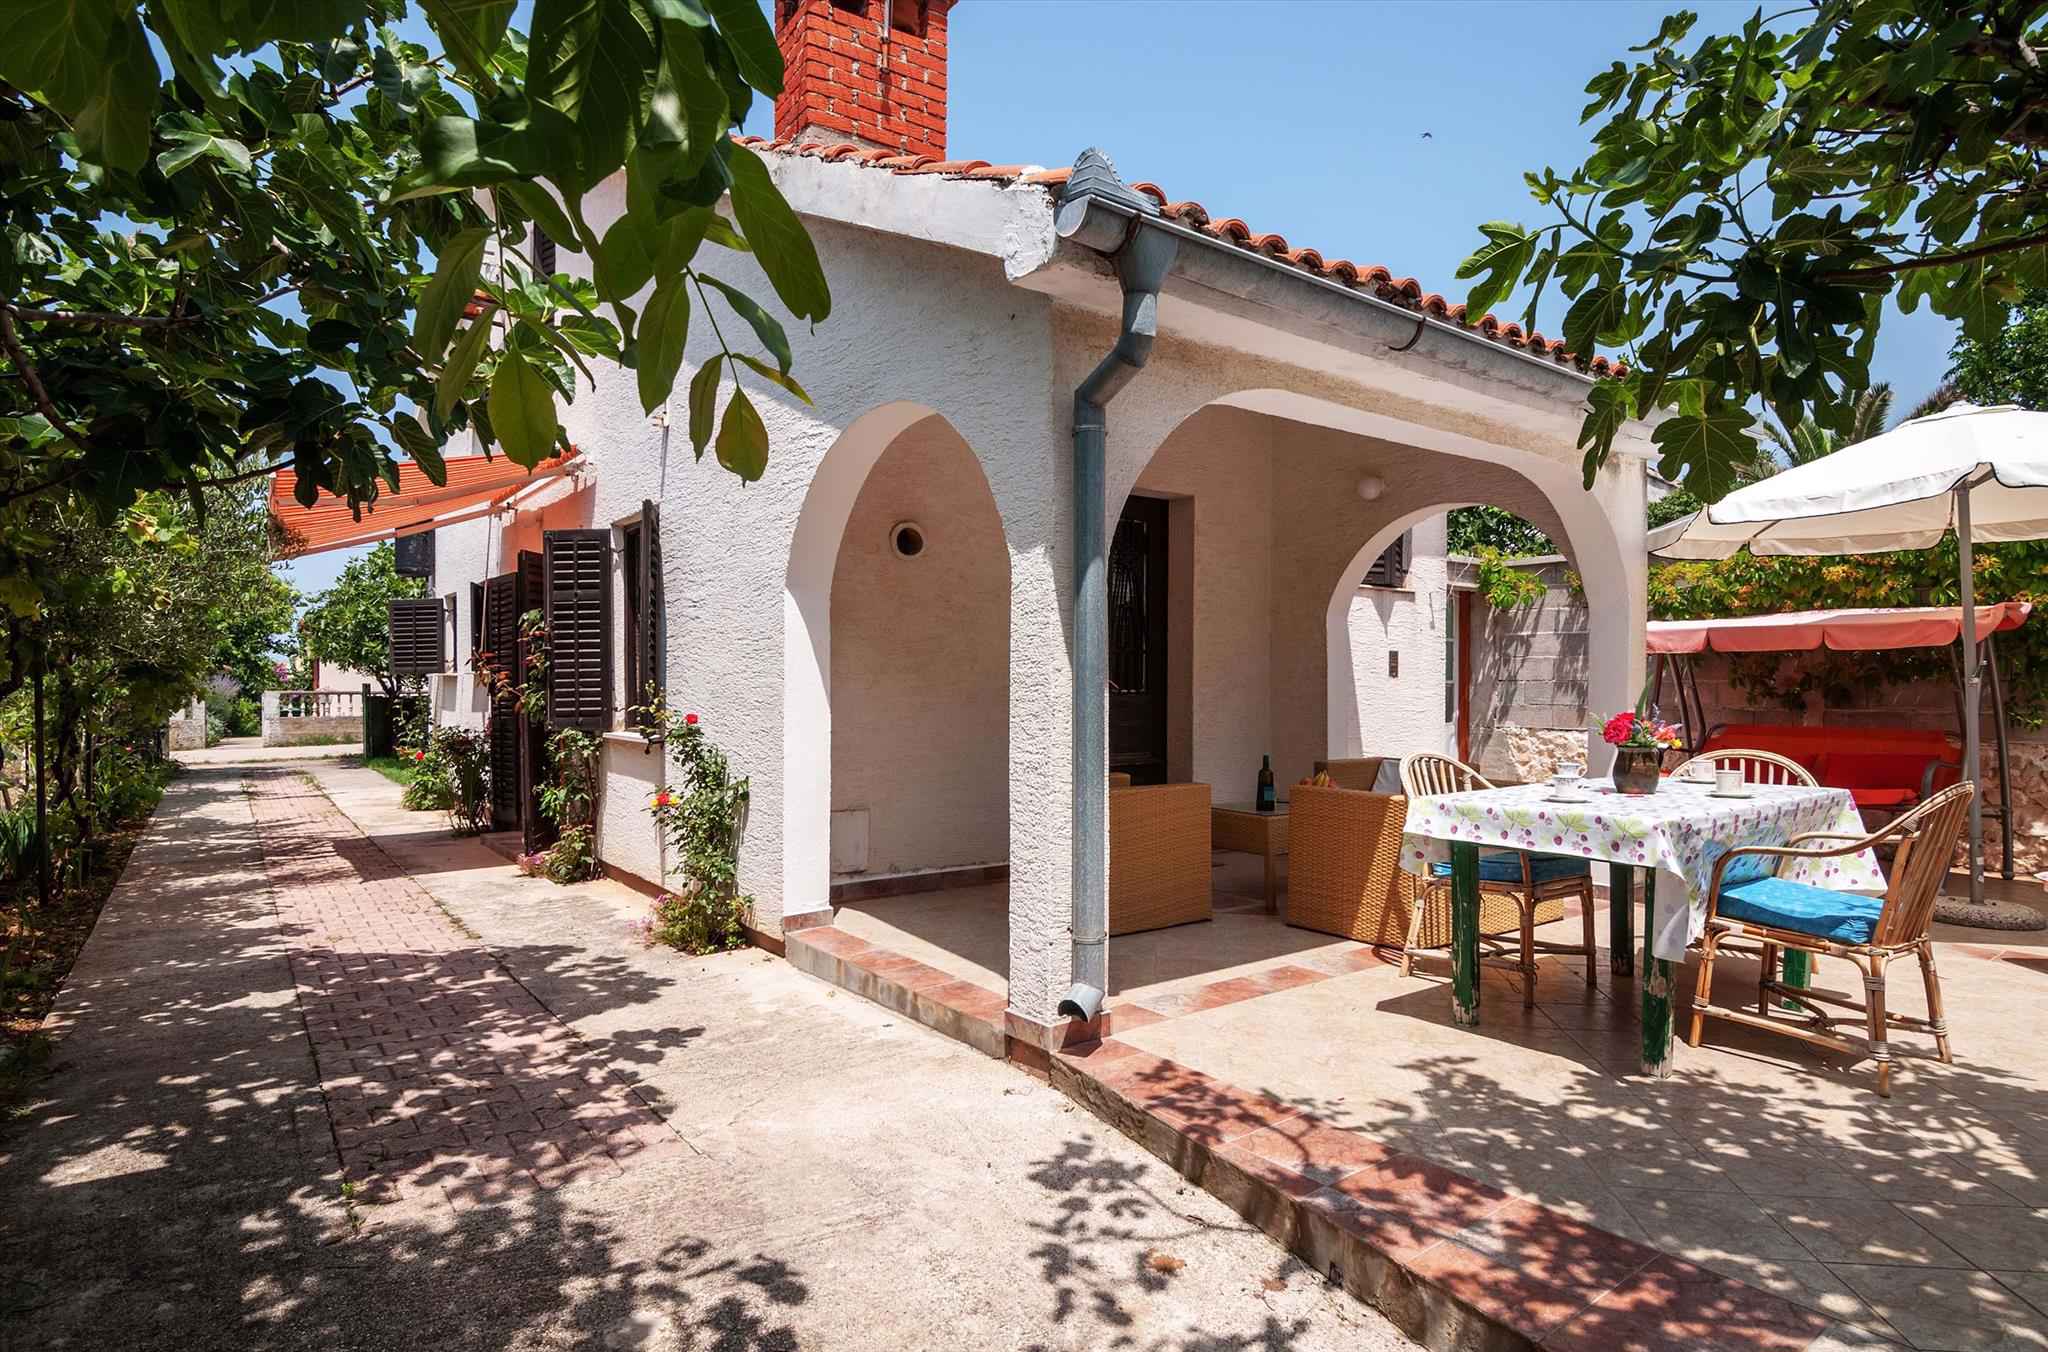 Ferienhaus mit schöner Terrasse Ferienhaus in Kroatien